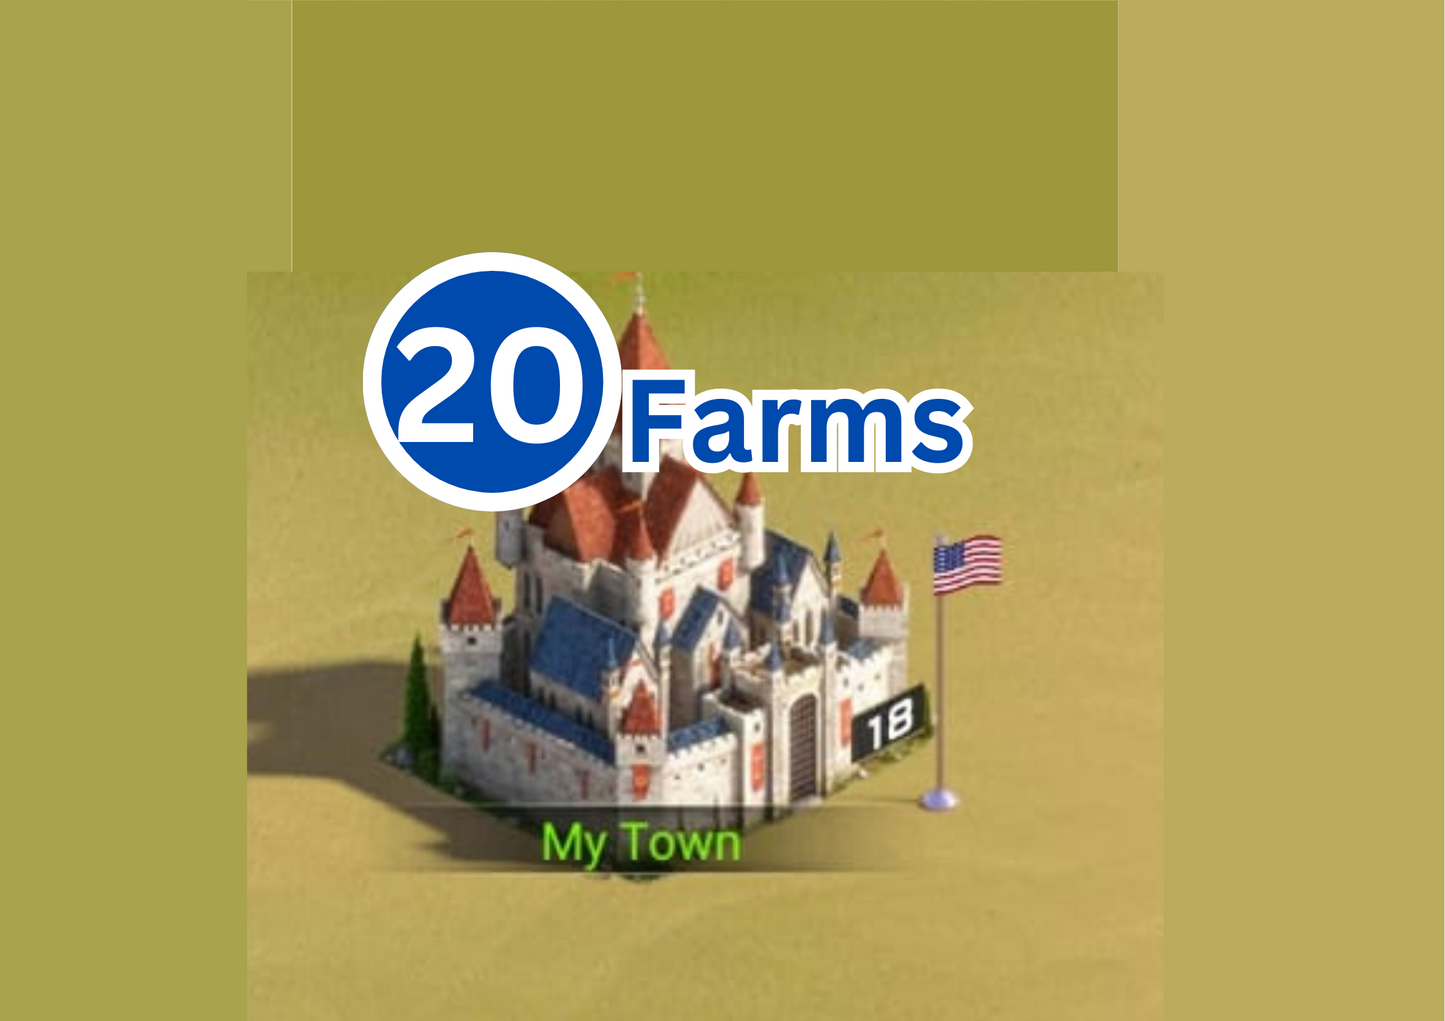 20 C18 Farms